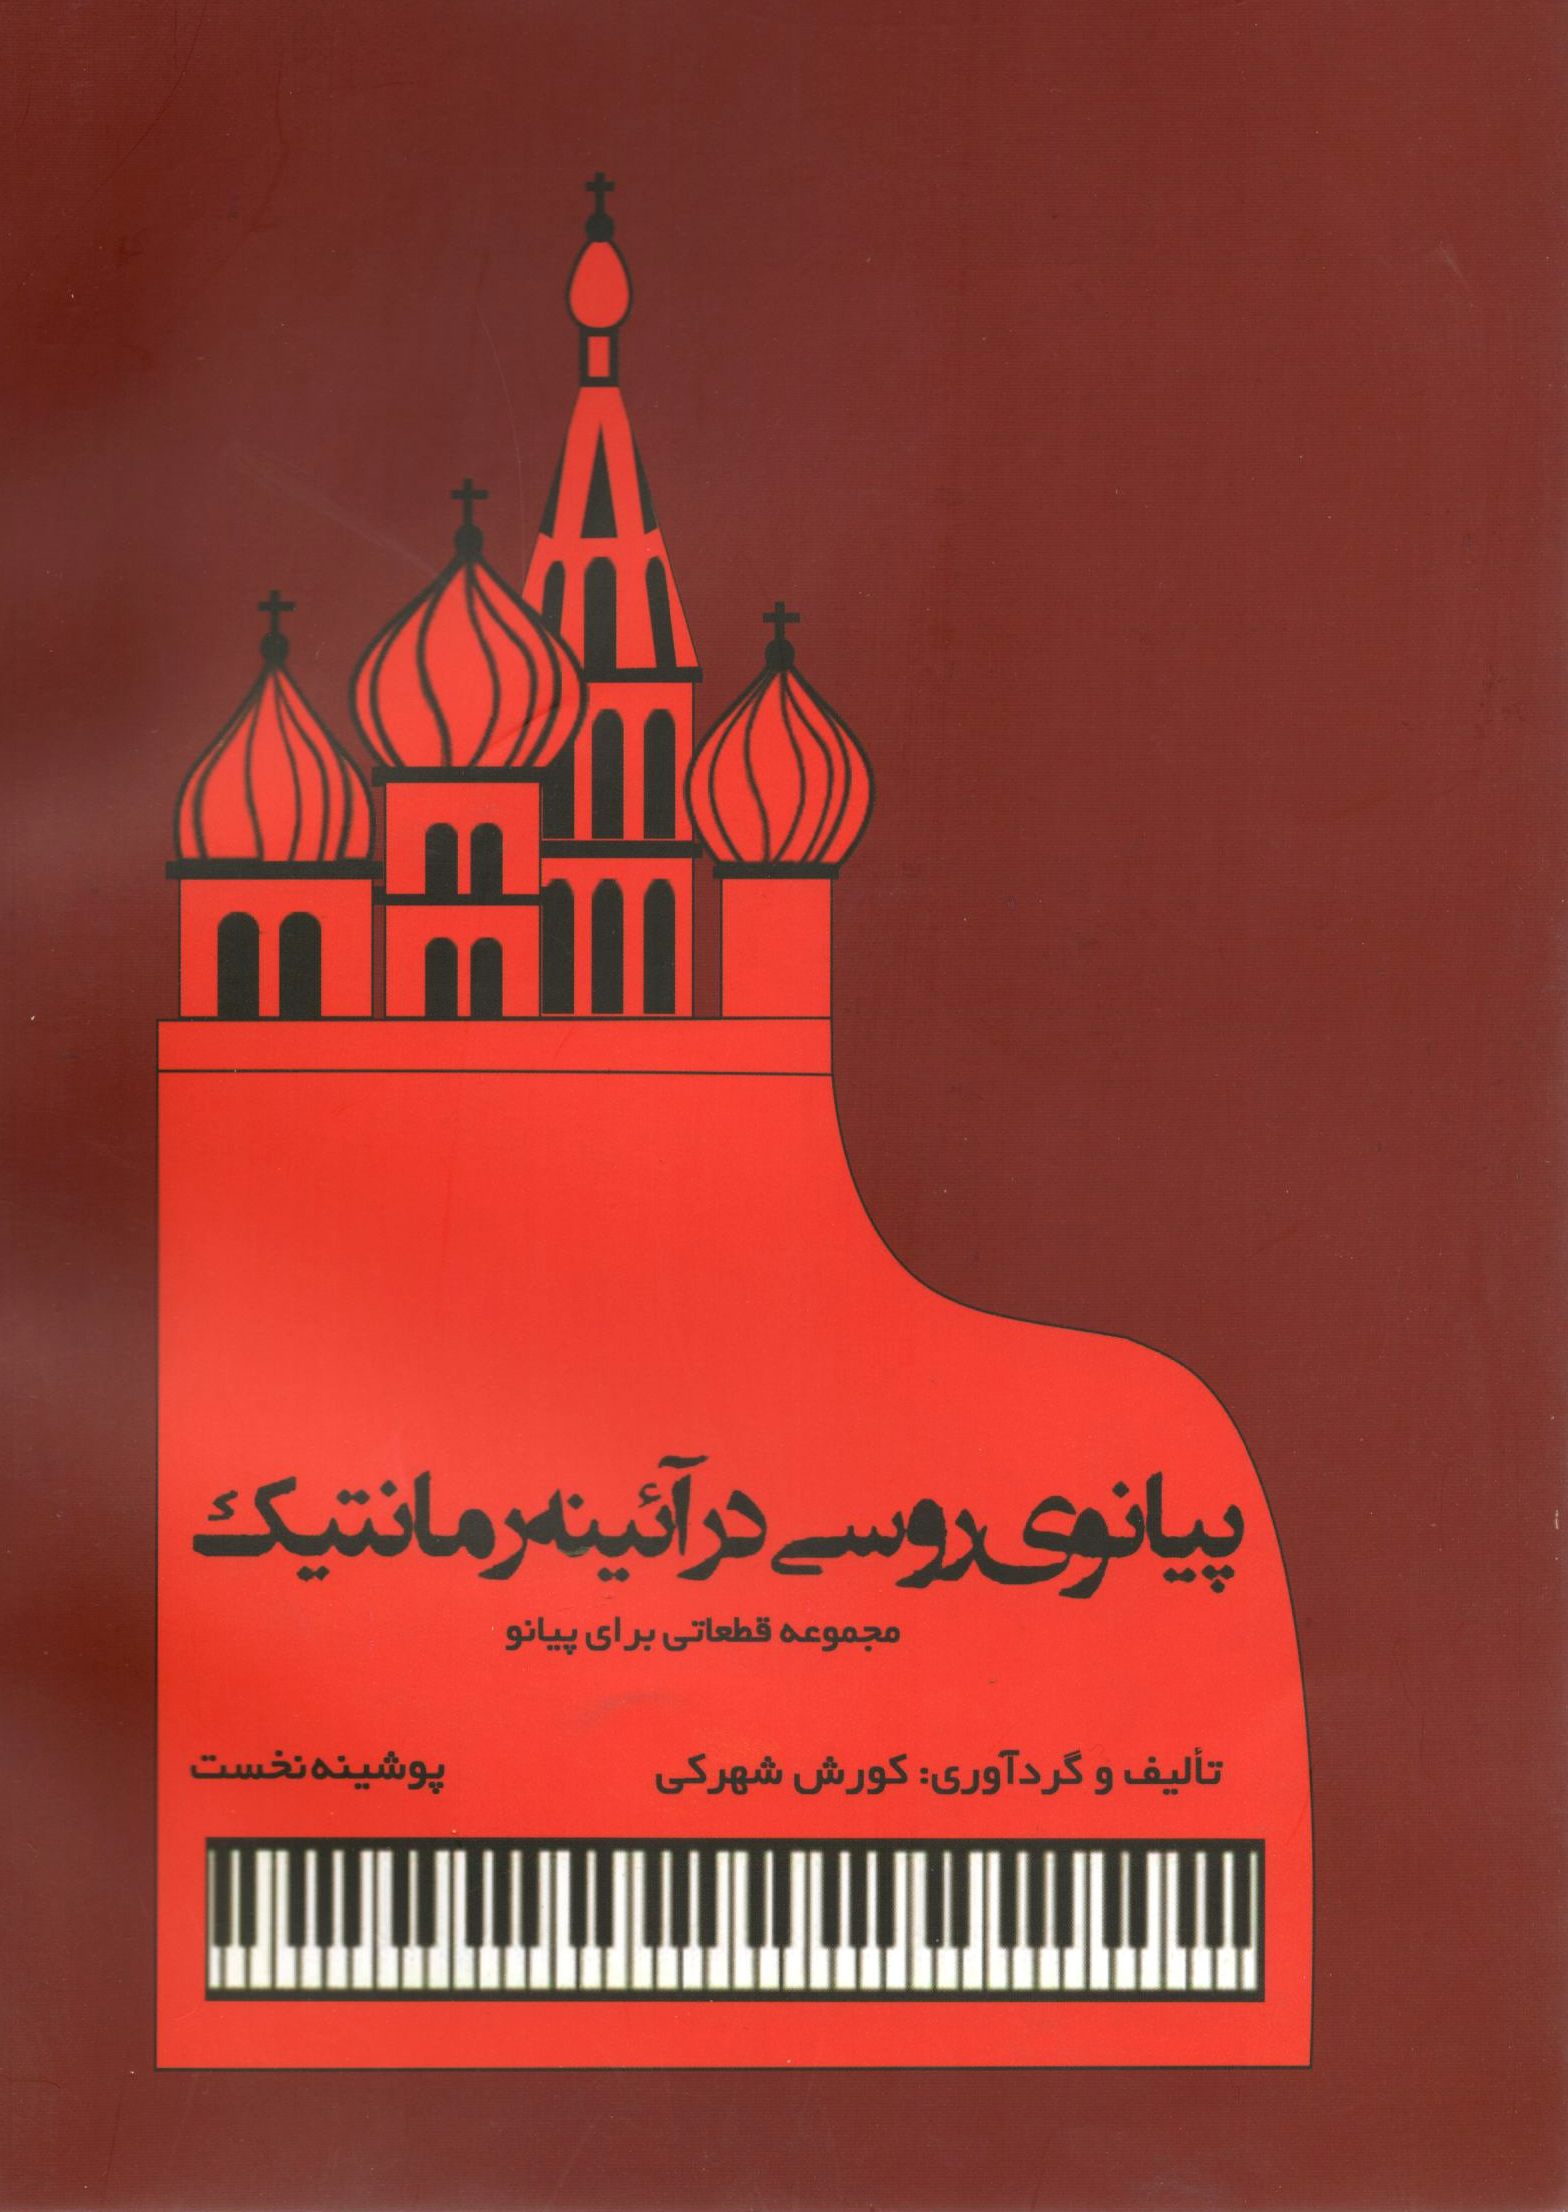 پیانوی روسی درآئینه رمانتیک مجموعه قطعاتی برای پیتنو کوروش شهرکی